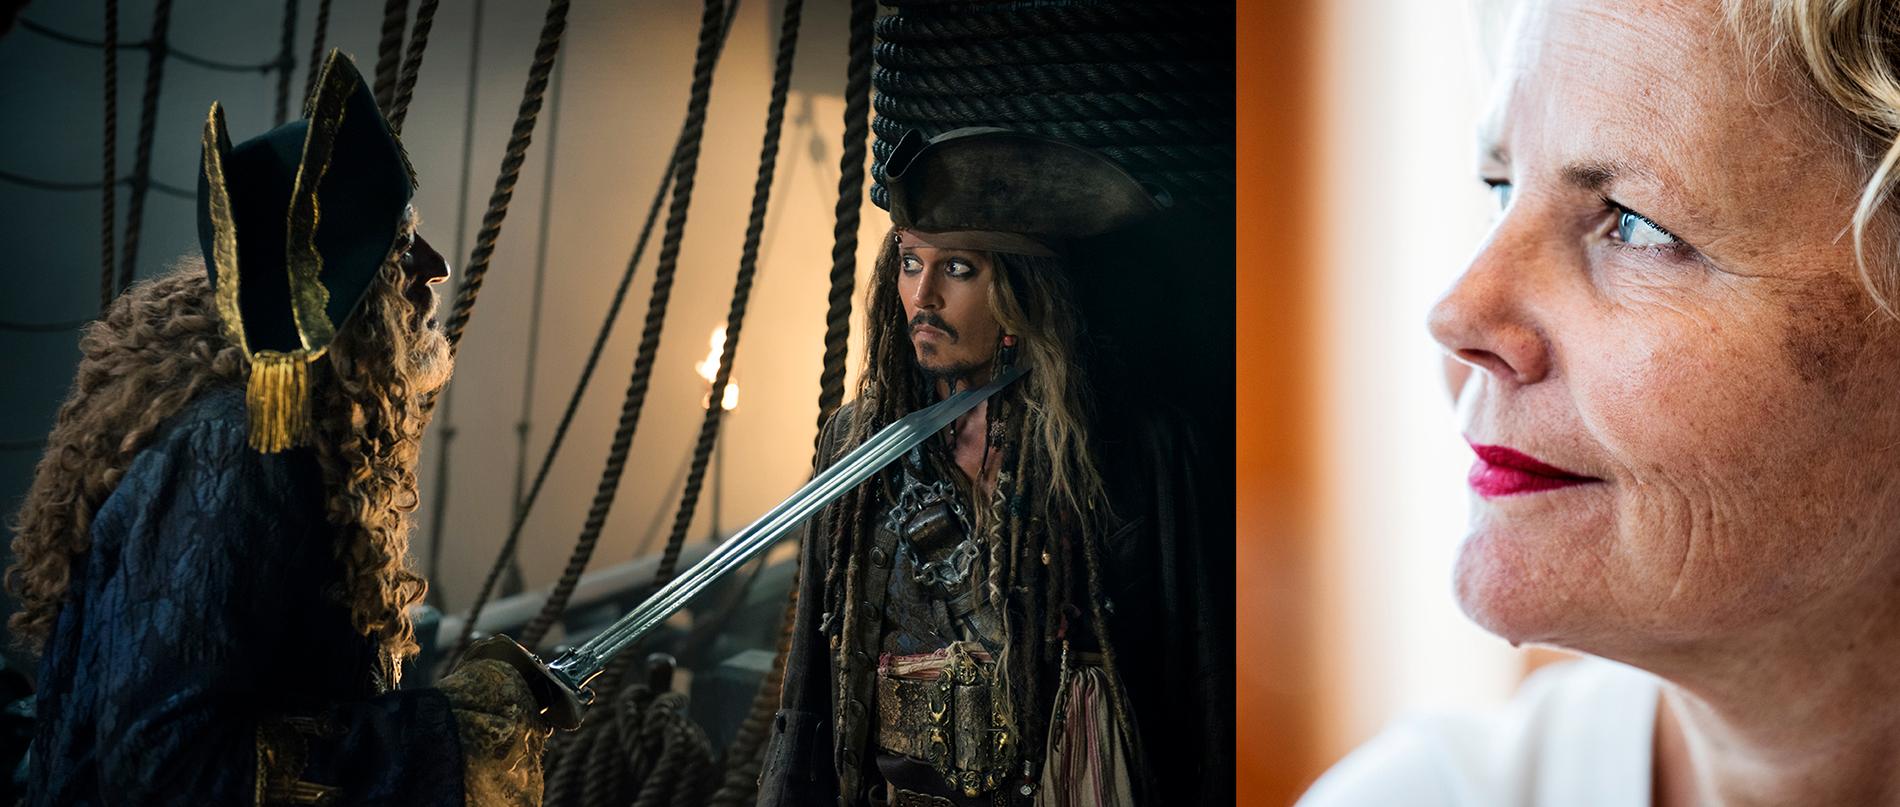 Spelar det någon roll om Pirates of the Caribbean regisseras av en kvinna? Till höger syns Anna Serner, VD för Svenska Filminstitutet. 